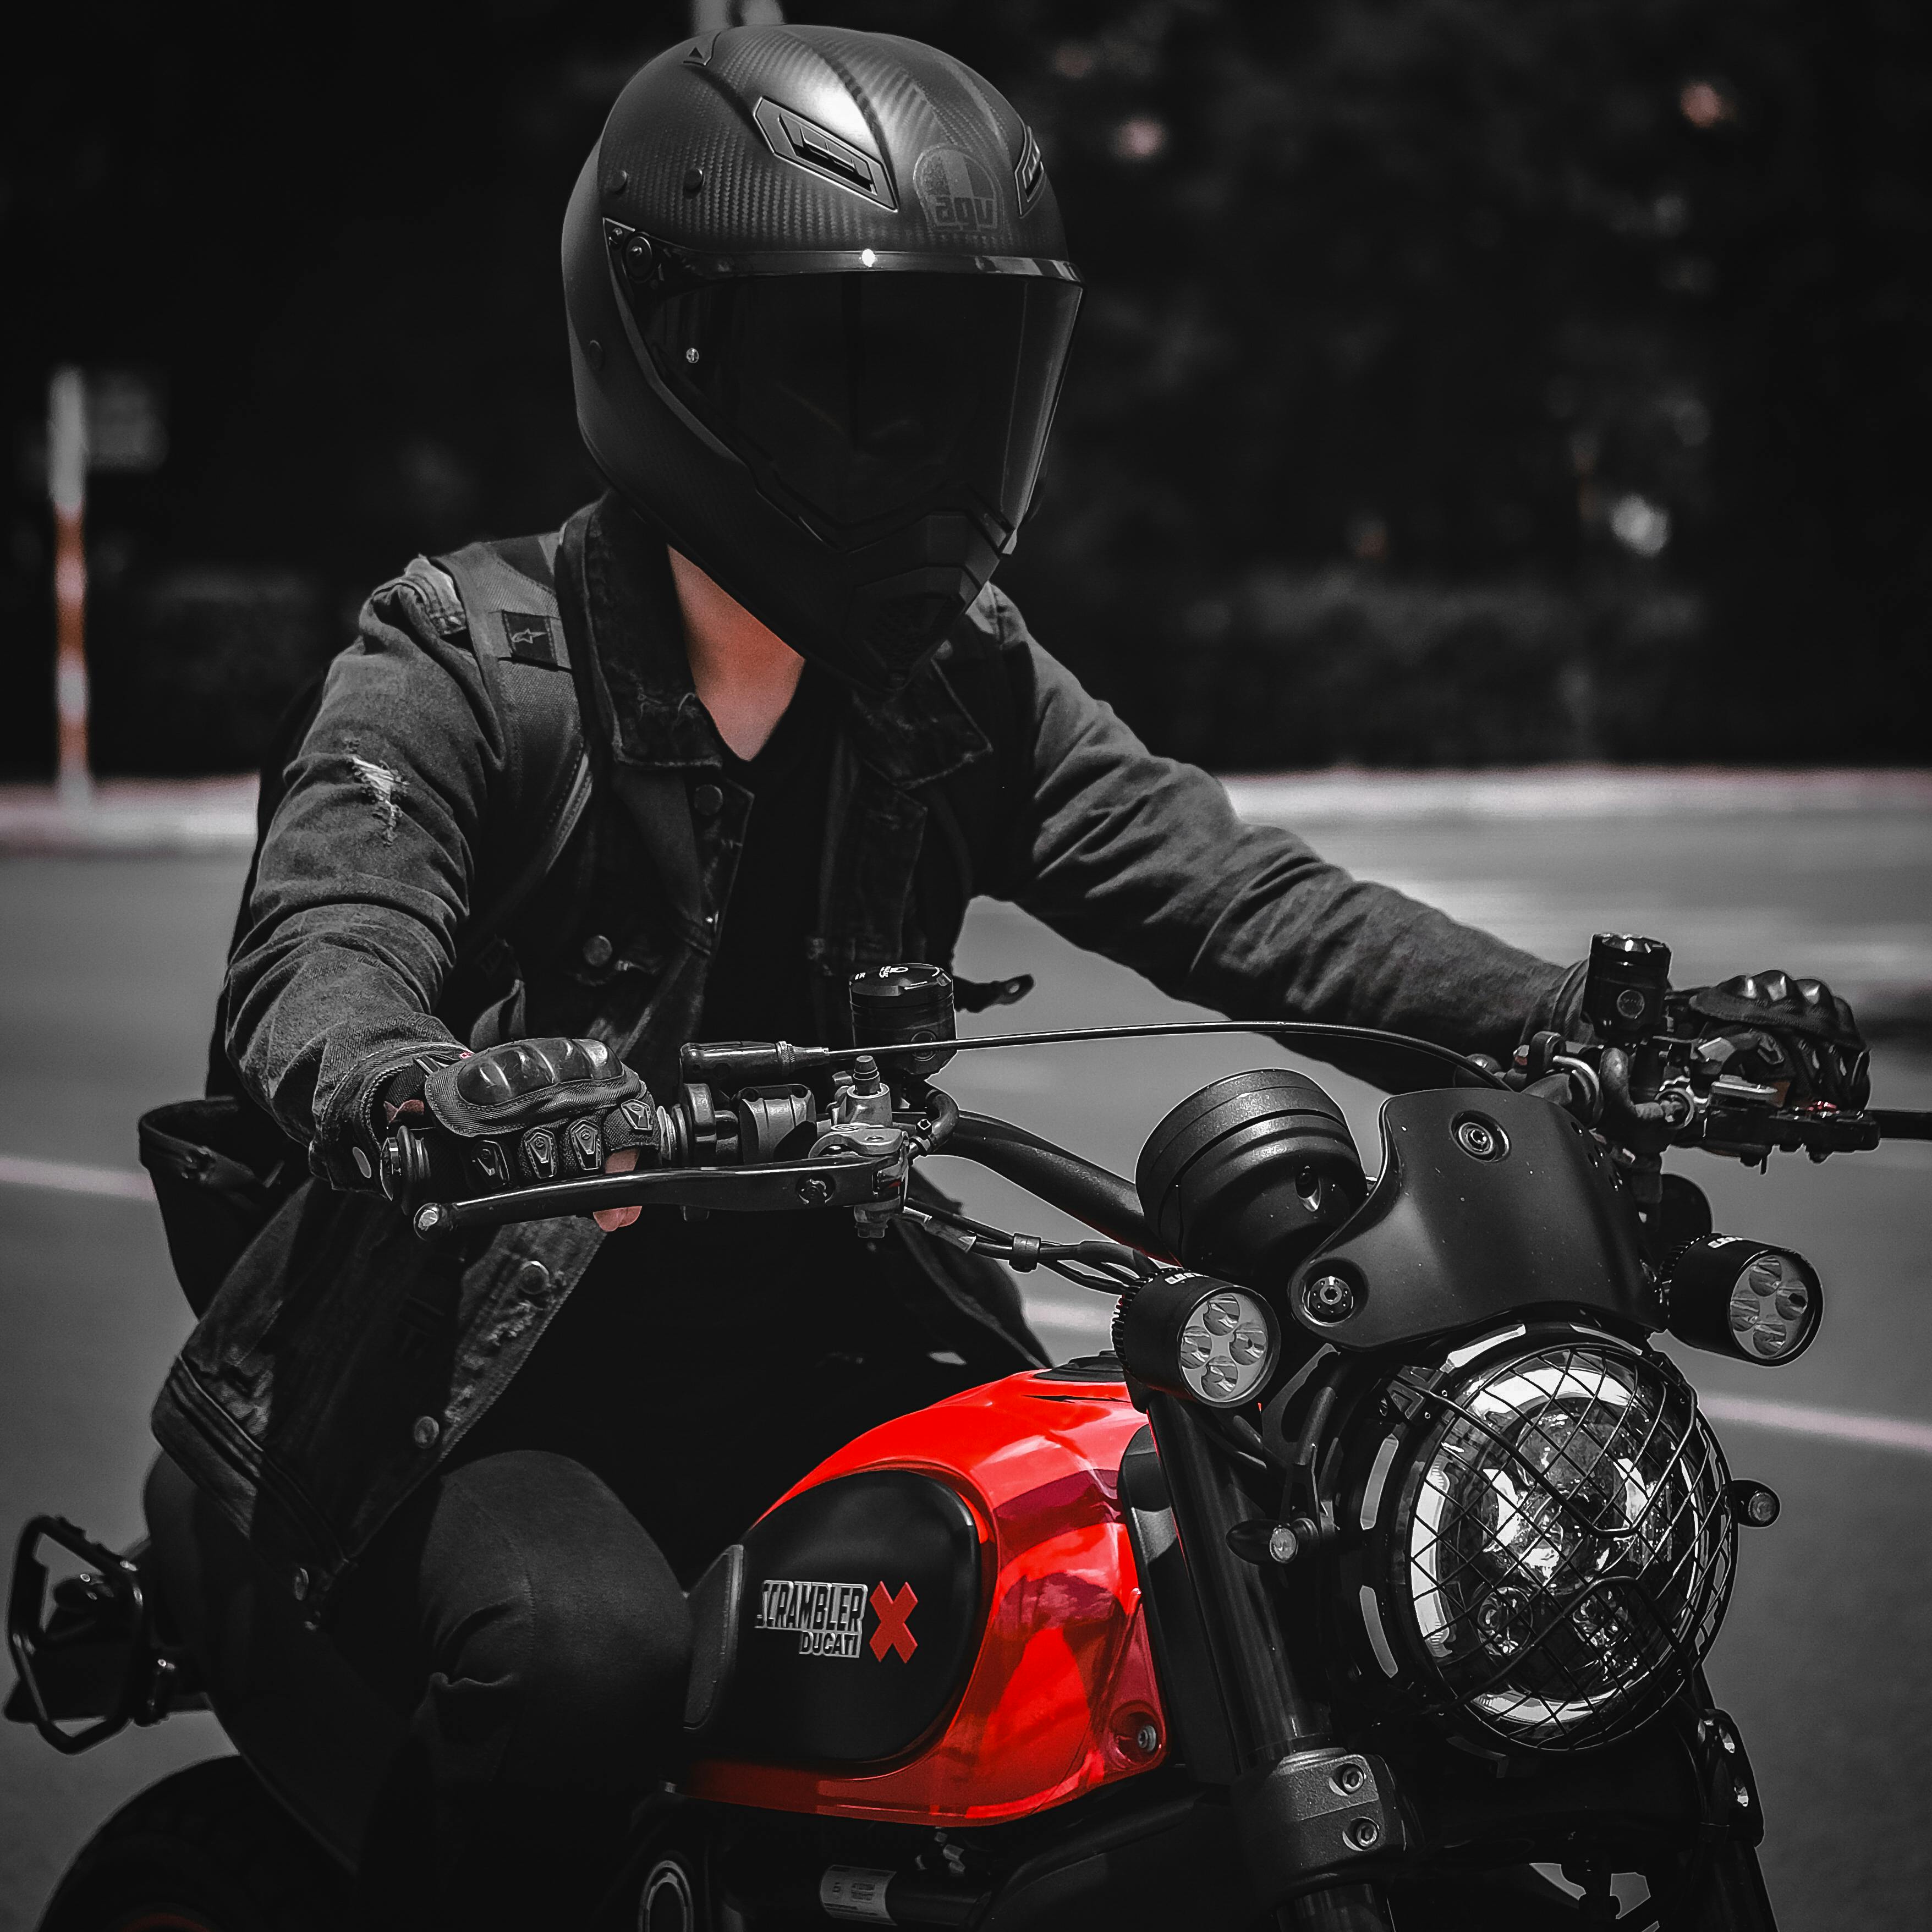 metallisk I navnet Fremragende Gratis lagerfoto af ducati, handsker, hjelm, motorcykel, person, ridning,  sort jakke, stor cykel, udendørs